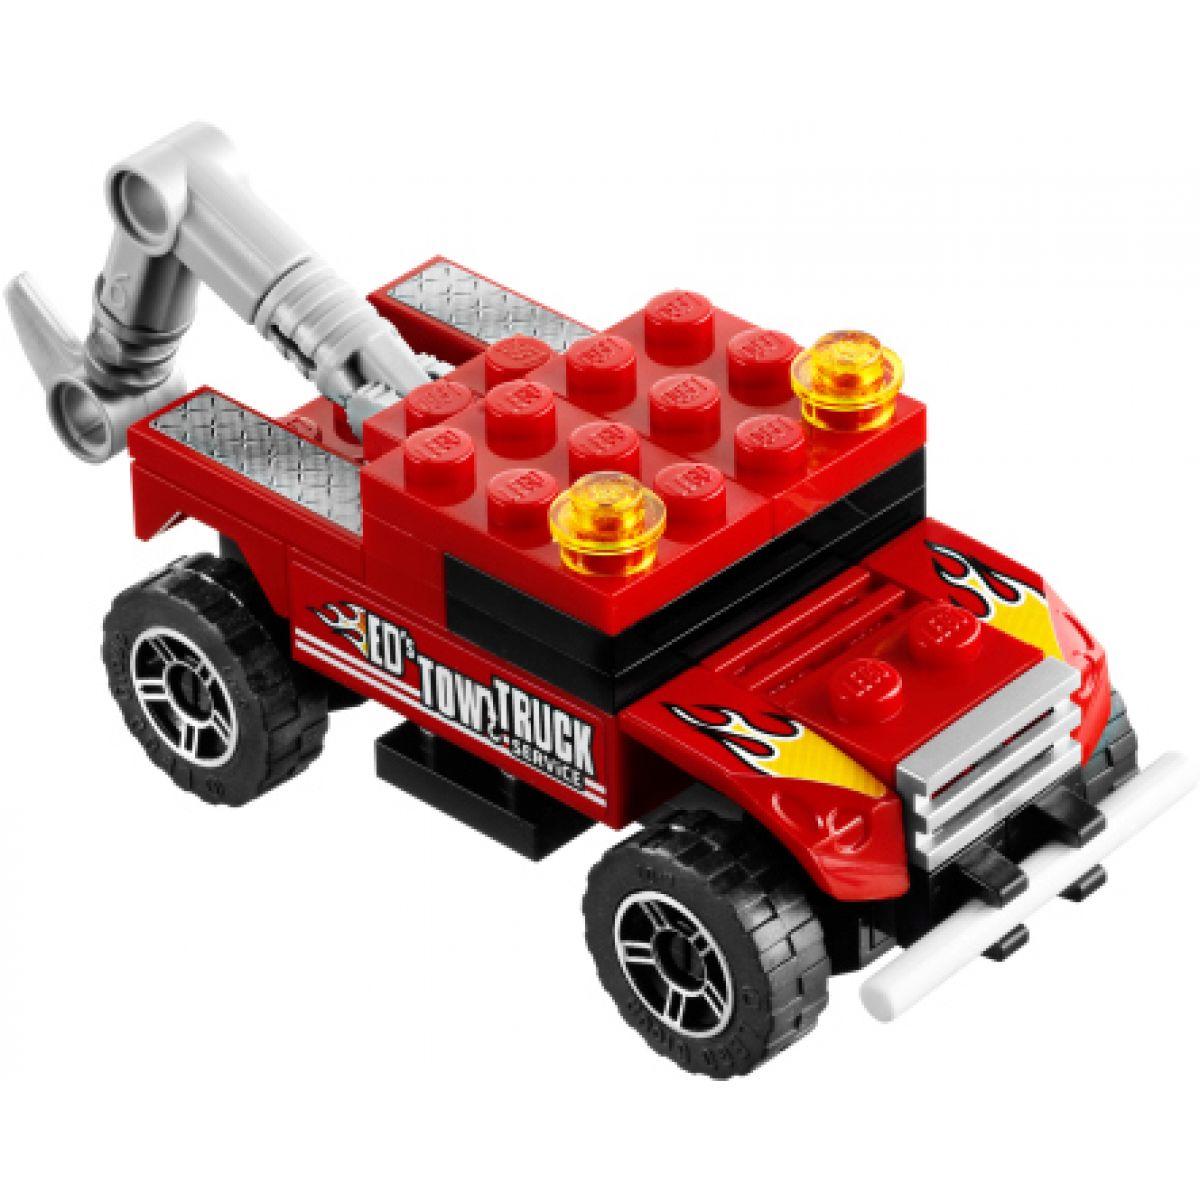 LEGO RACERS 8195 Turbo tahač